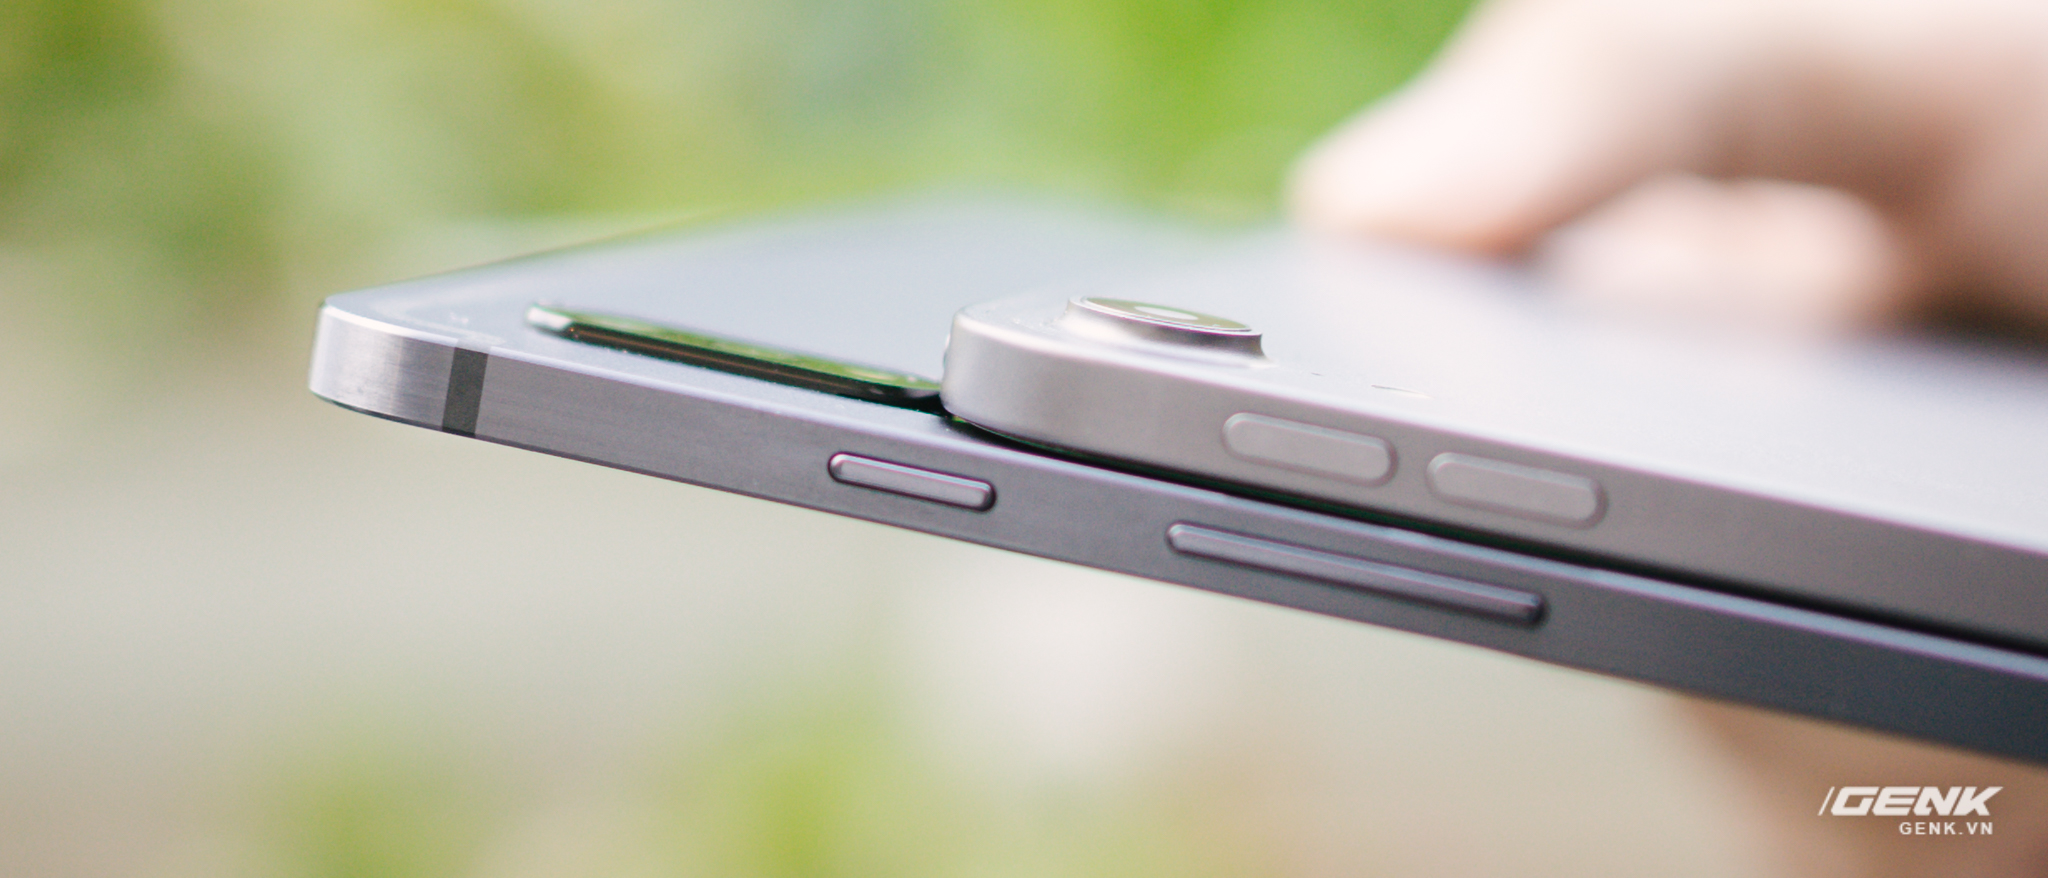 Với Samsung Galaxy Tab S7+, Android đã bỏ xa IOS về sản xuất máy tính bảng? ảnh 3